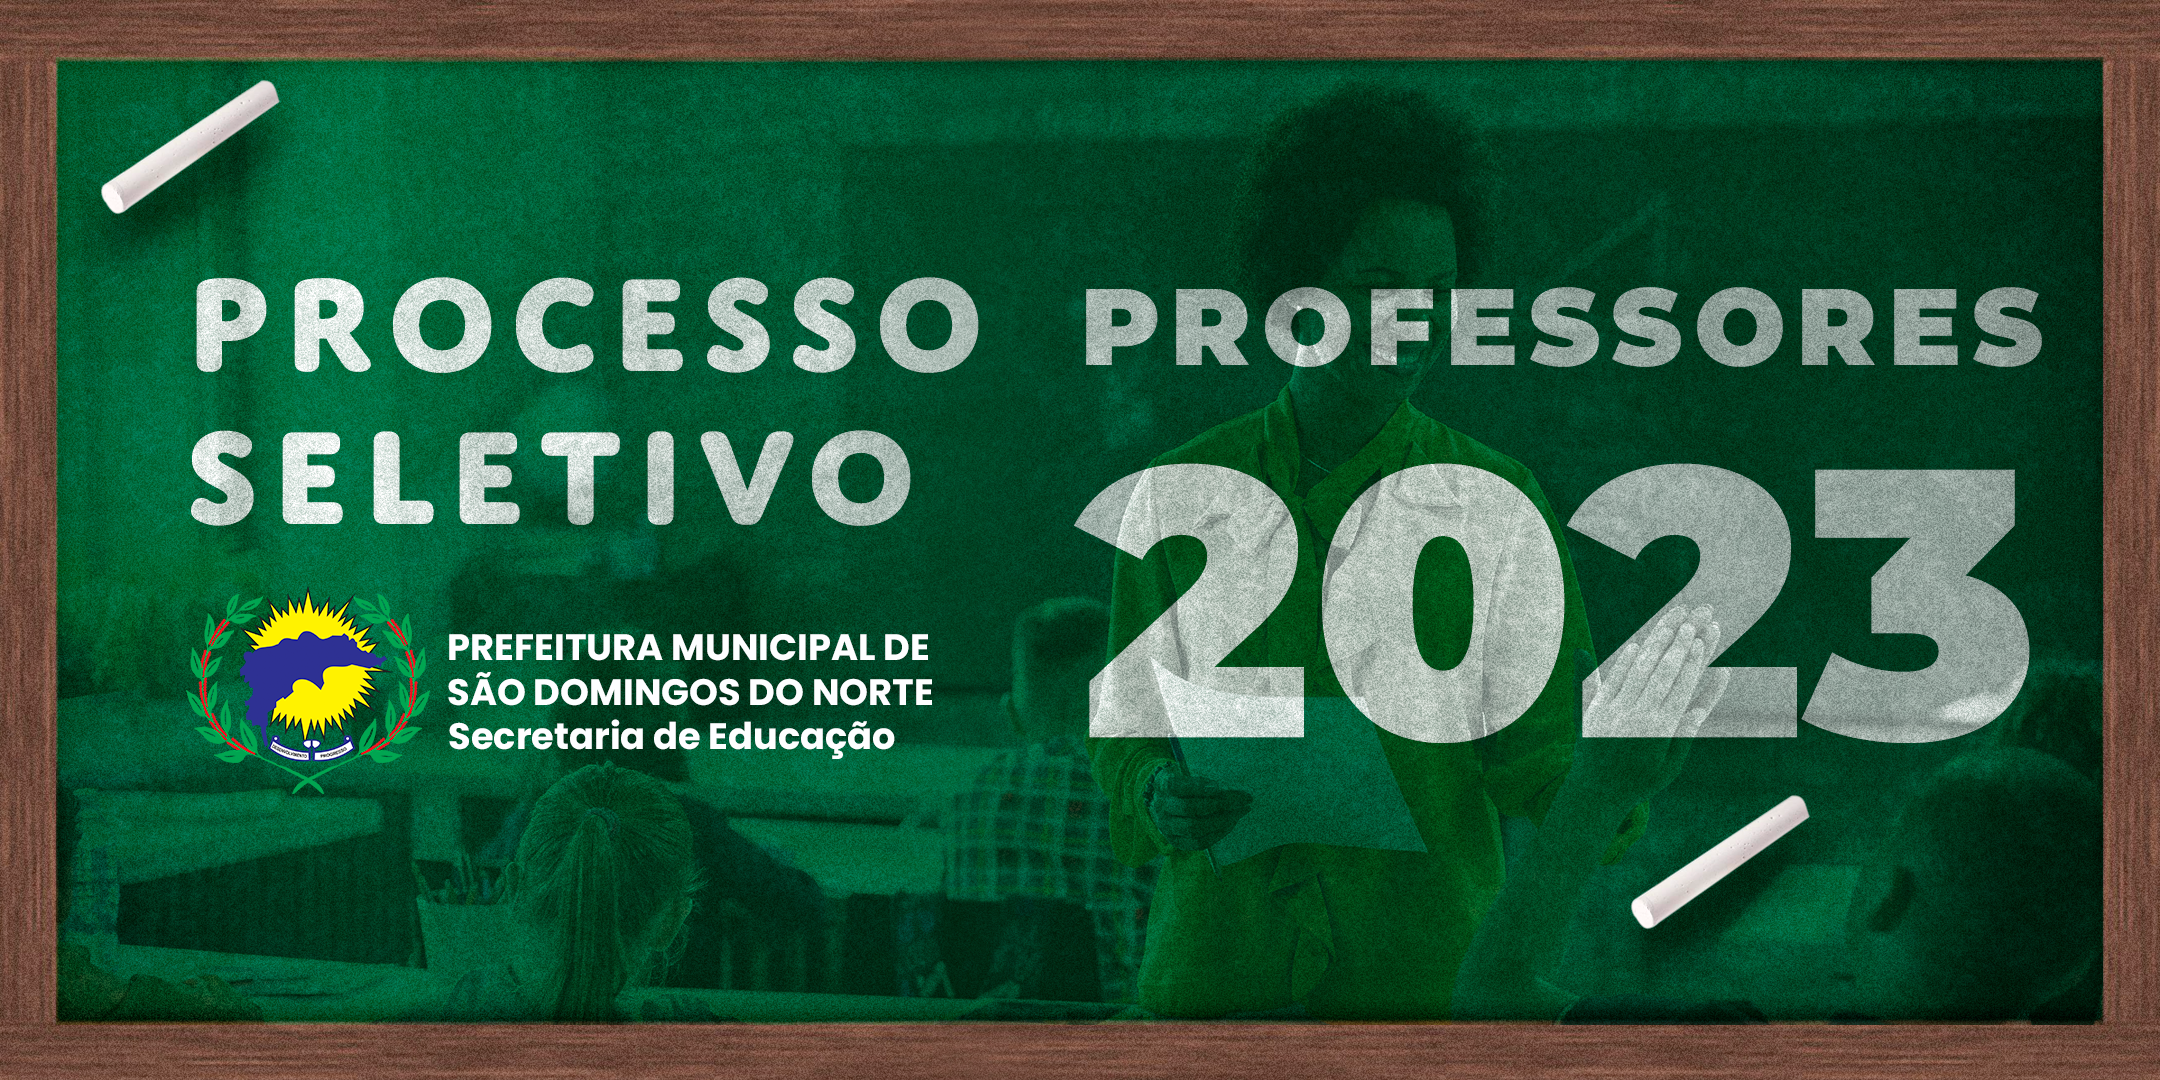  PROCESSO SELETIVO PARA PROFESSORES 2023